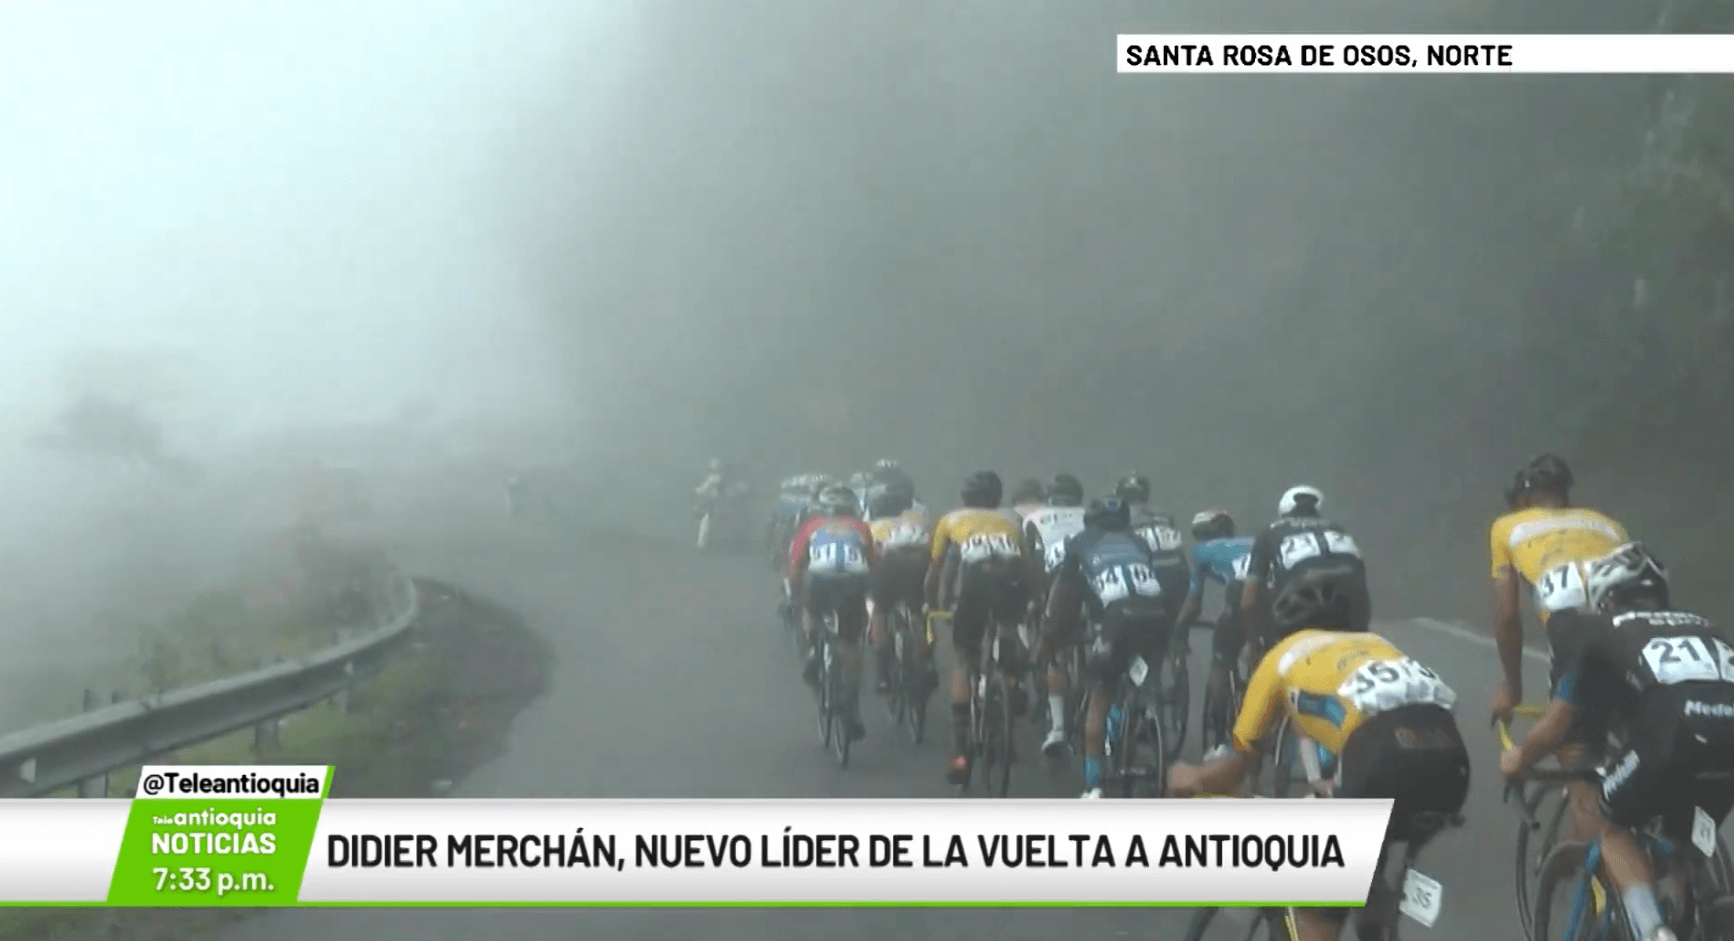 Didier Merchán, nuevo líder de la Vuelta a Antioquia